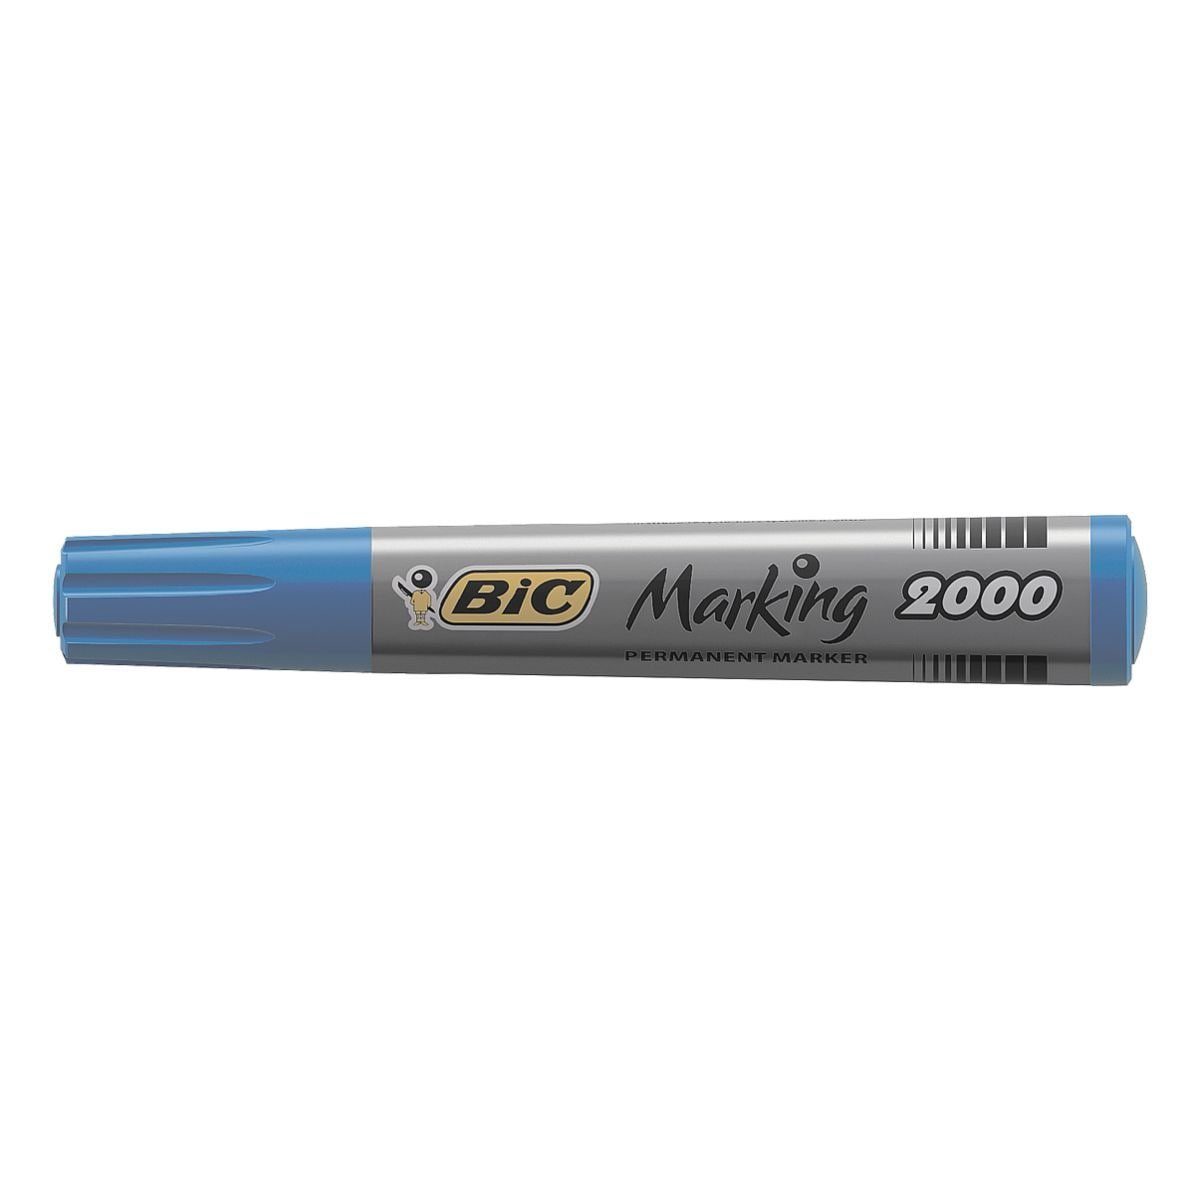 BIC Permanentmarker Marking 2000, Wochen mind. mit Austrocknungsschutz blau 554): (ISO offenlagerfähig 3